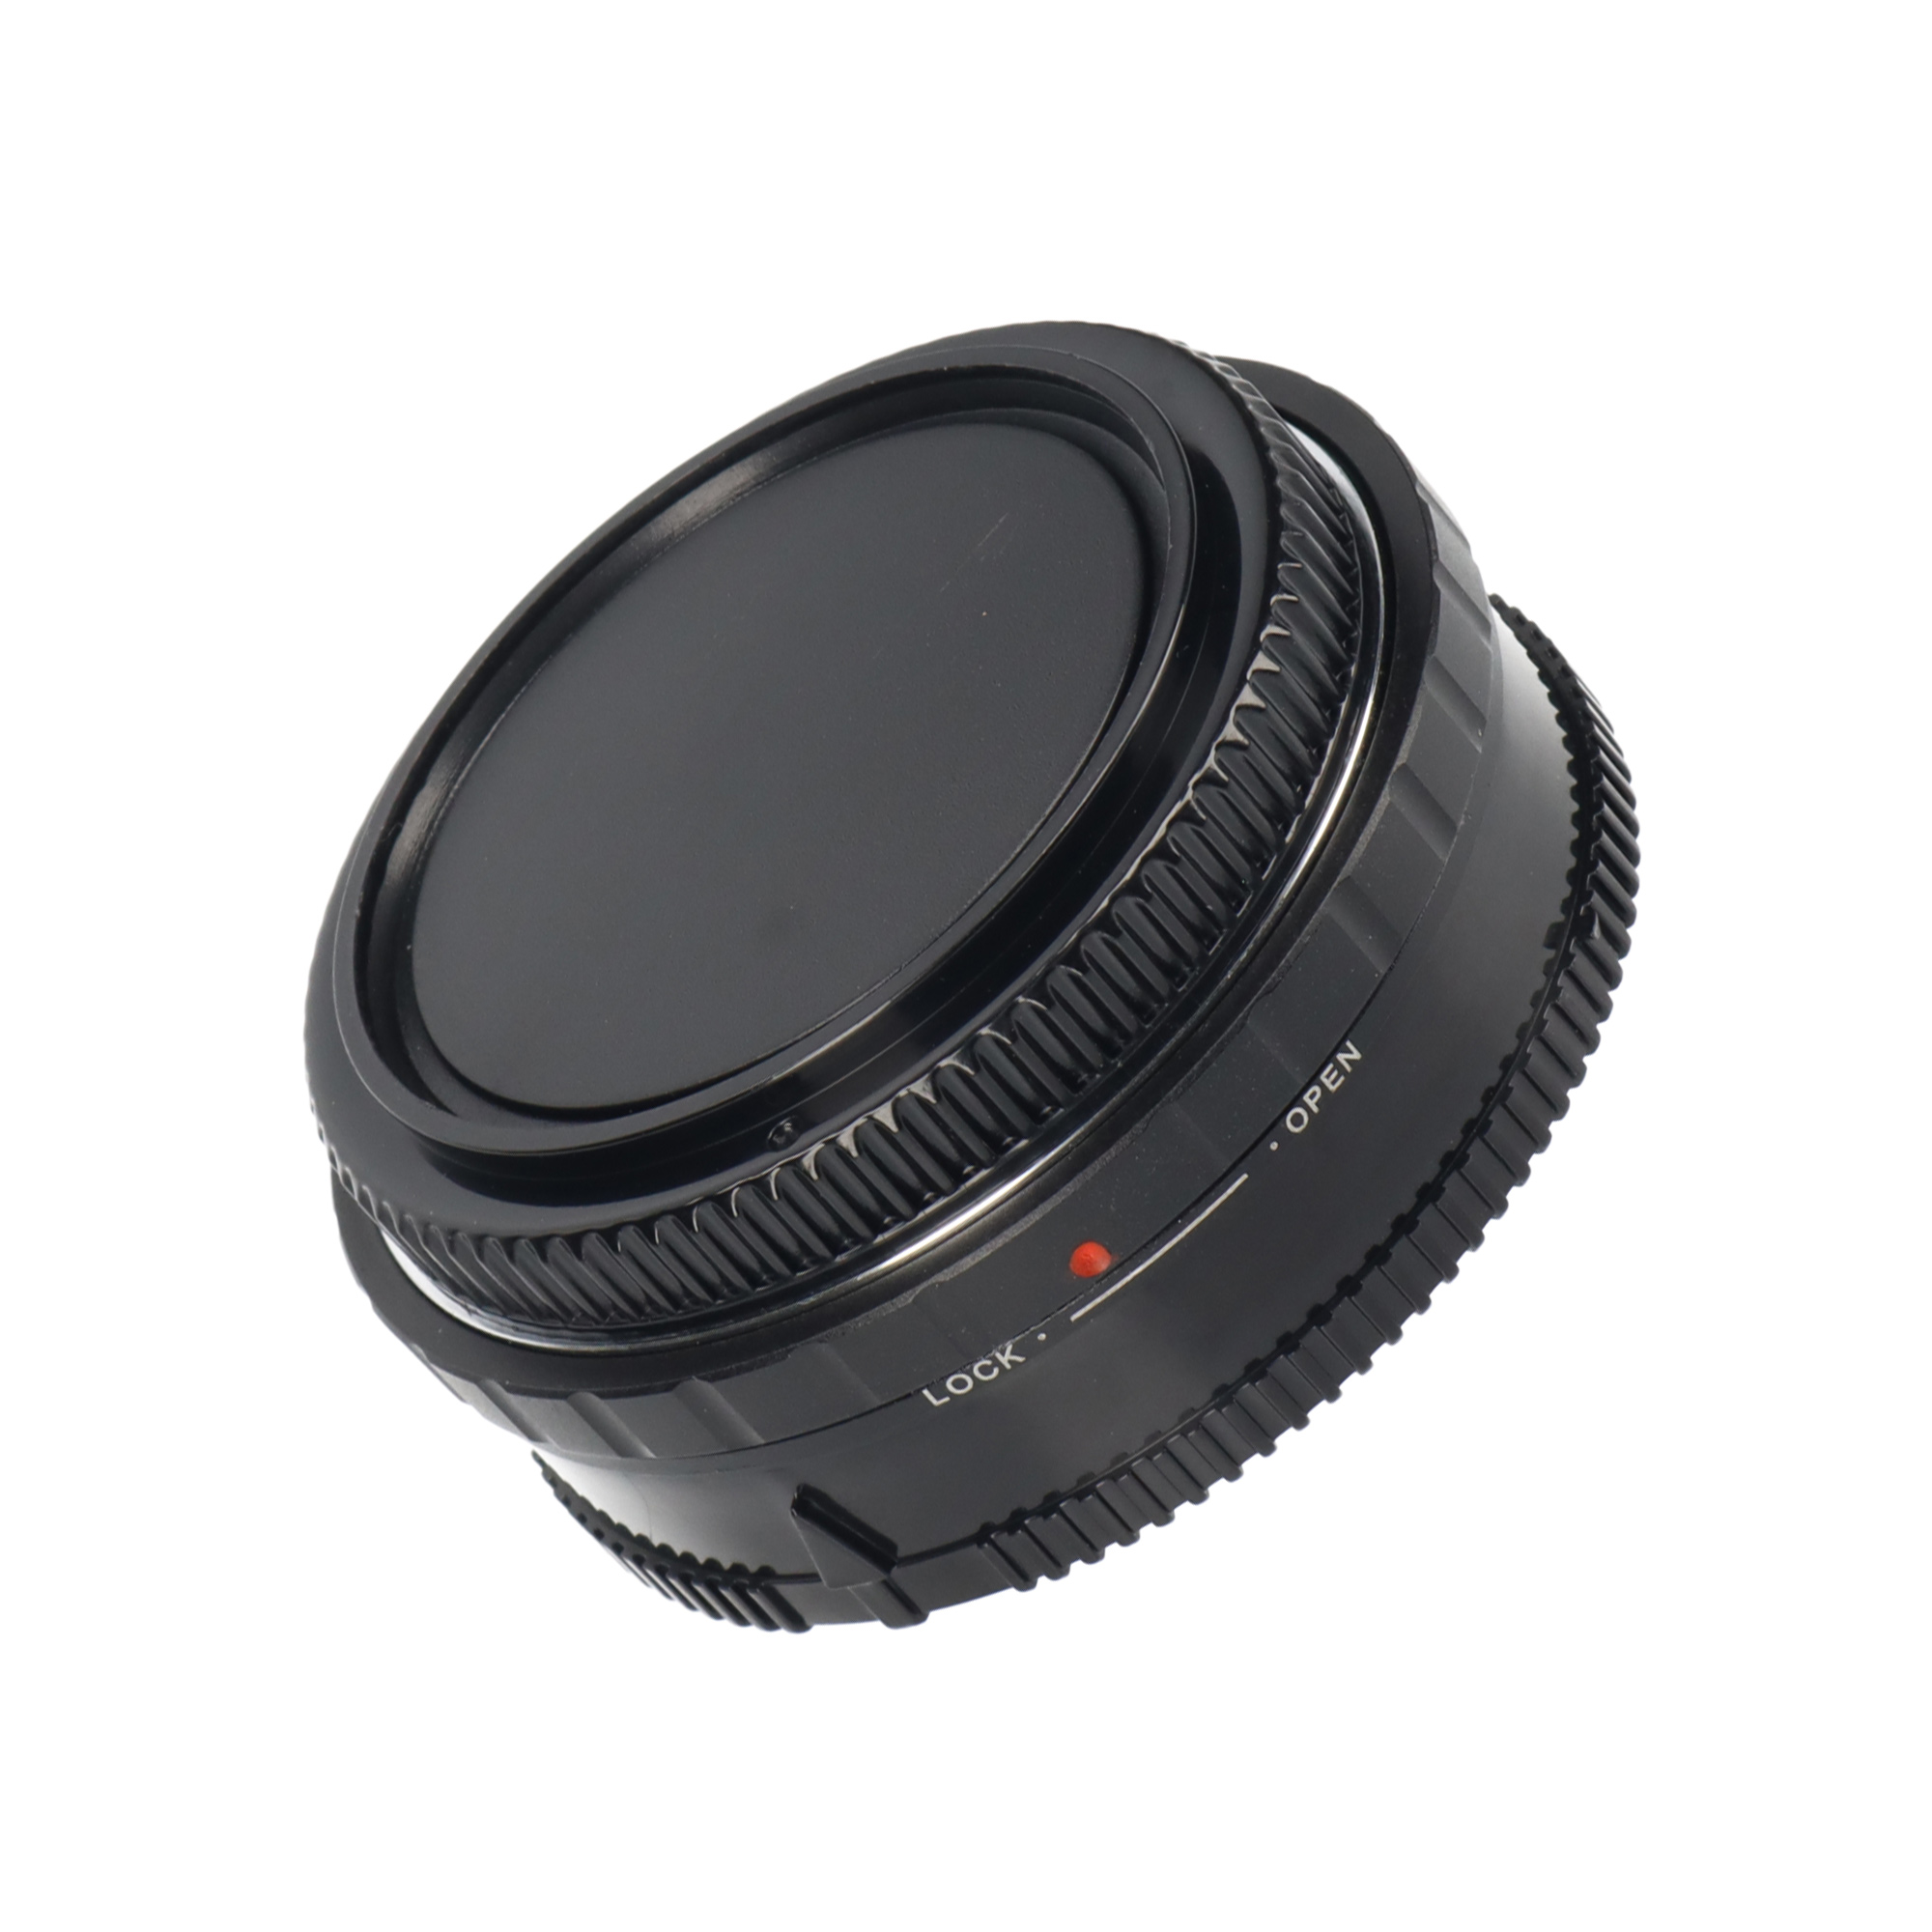 Canon FD-Objektive - Sony A-Mount Adapter + Korrektur Linse